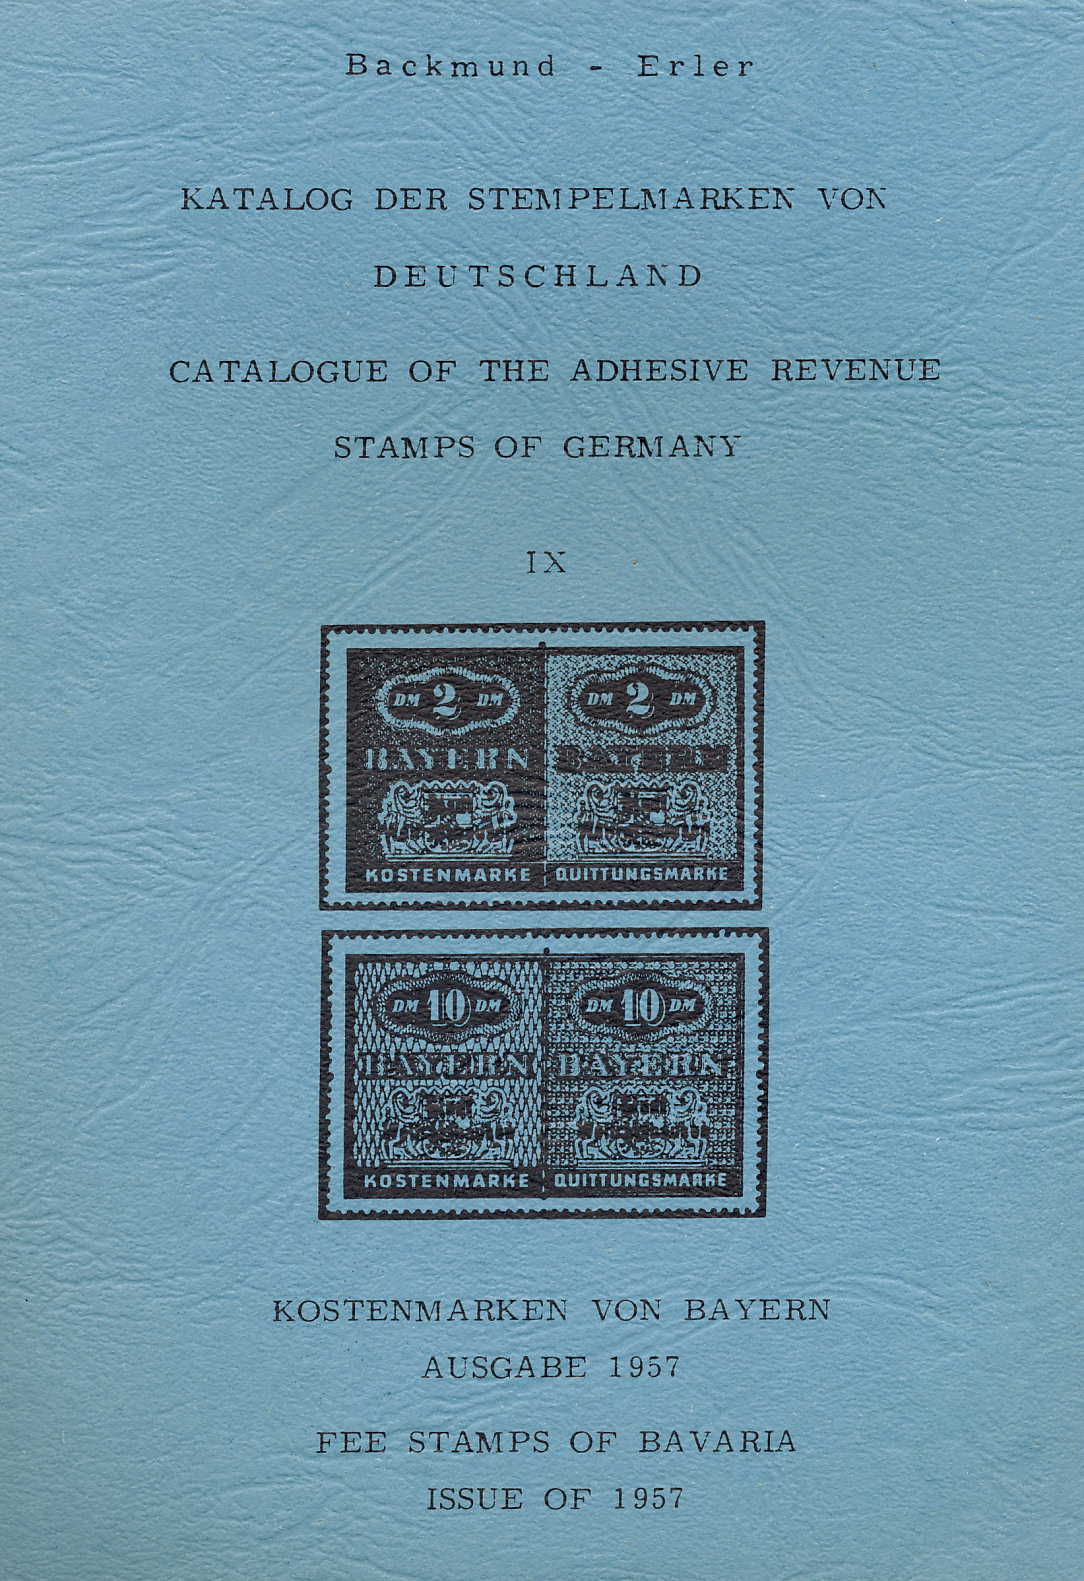 Backmund/Erler Katalog der Stempelmarken von Deutschland IX Kost